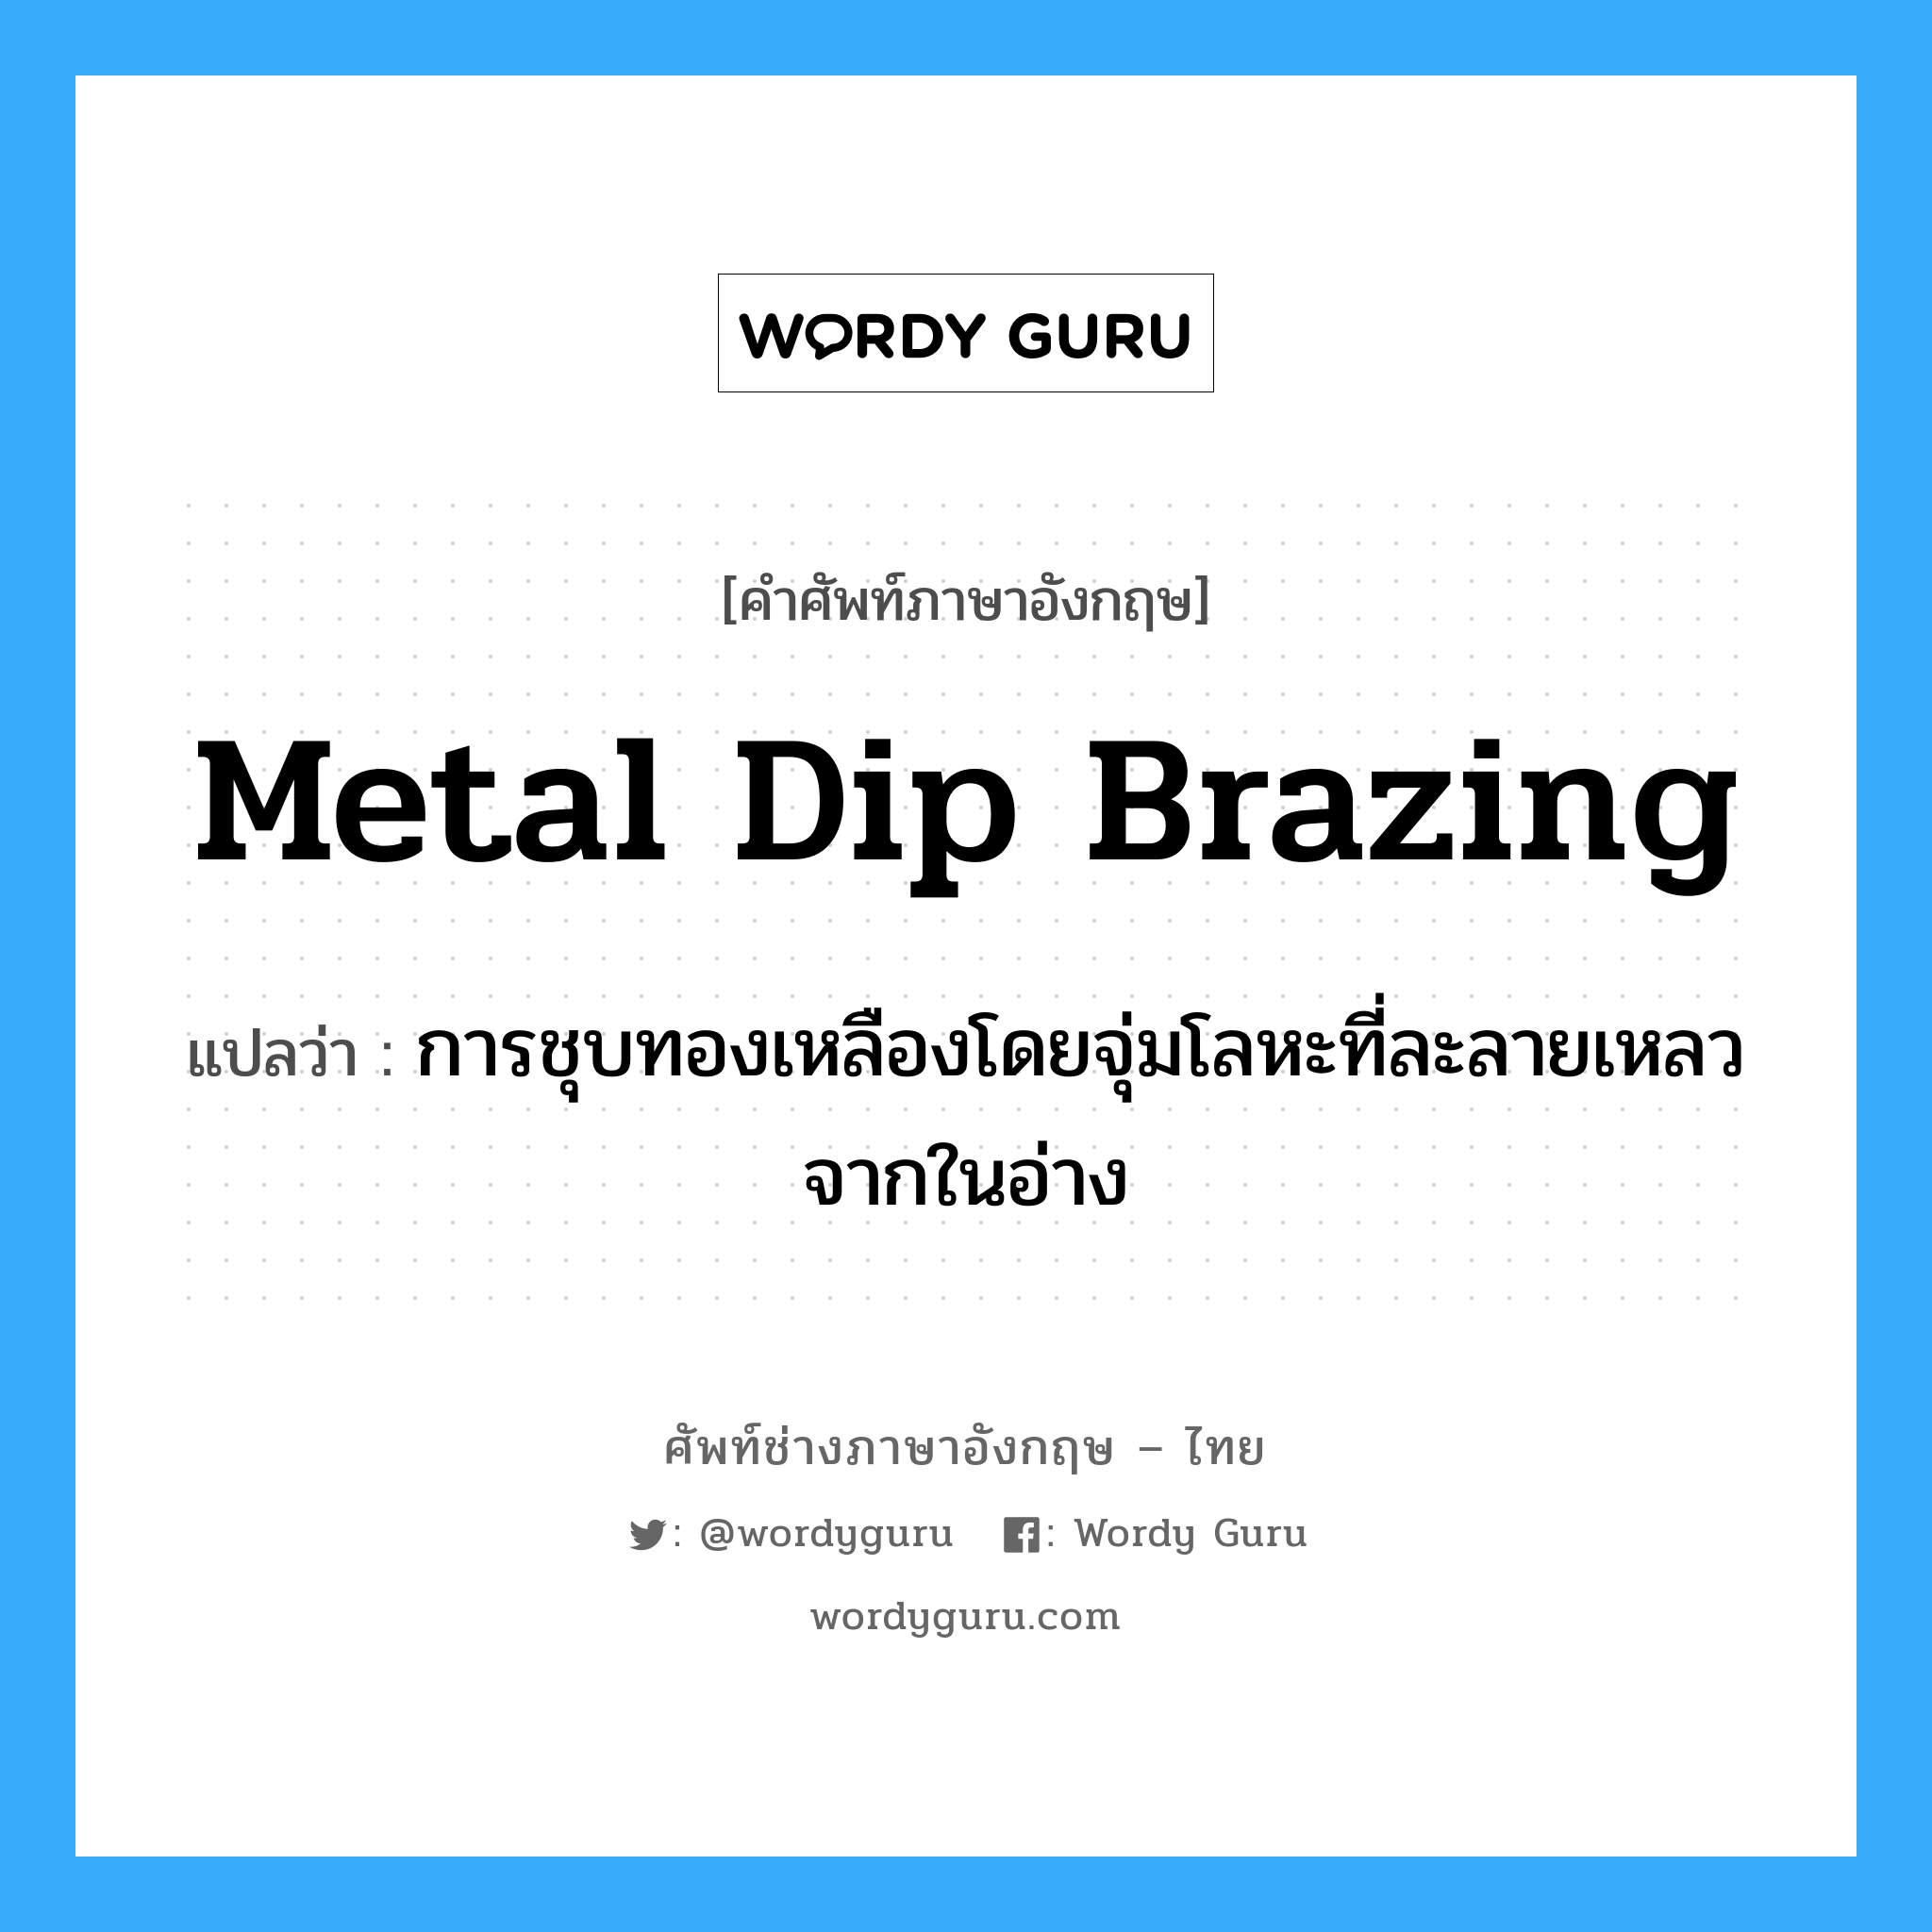 metal dip brazing แปลว่า?, คำศัพท์ช่างภาษาอังกฤษ - ไทย metal dip brazing คำศัพท์ภาษาอังกฤษ metal dip brazing แปลว่า การชุบทองเหลืองโดยจุ่มโลหะที่ละลายเหลวจากในอ่าง